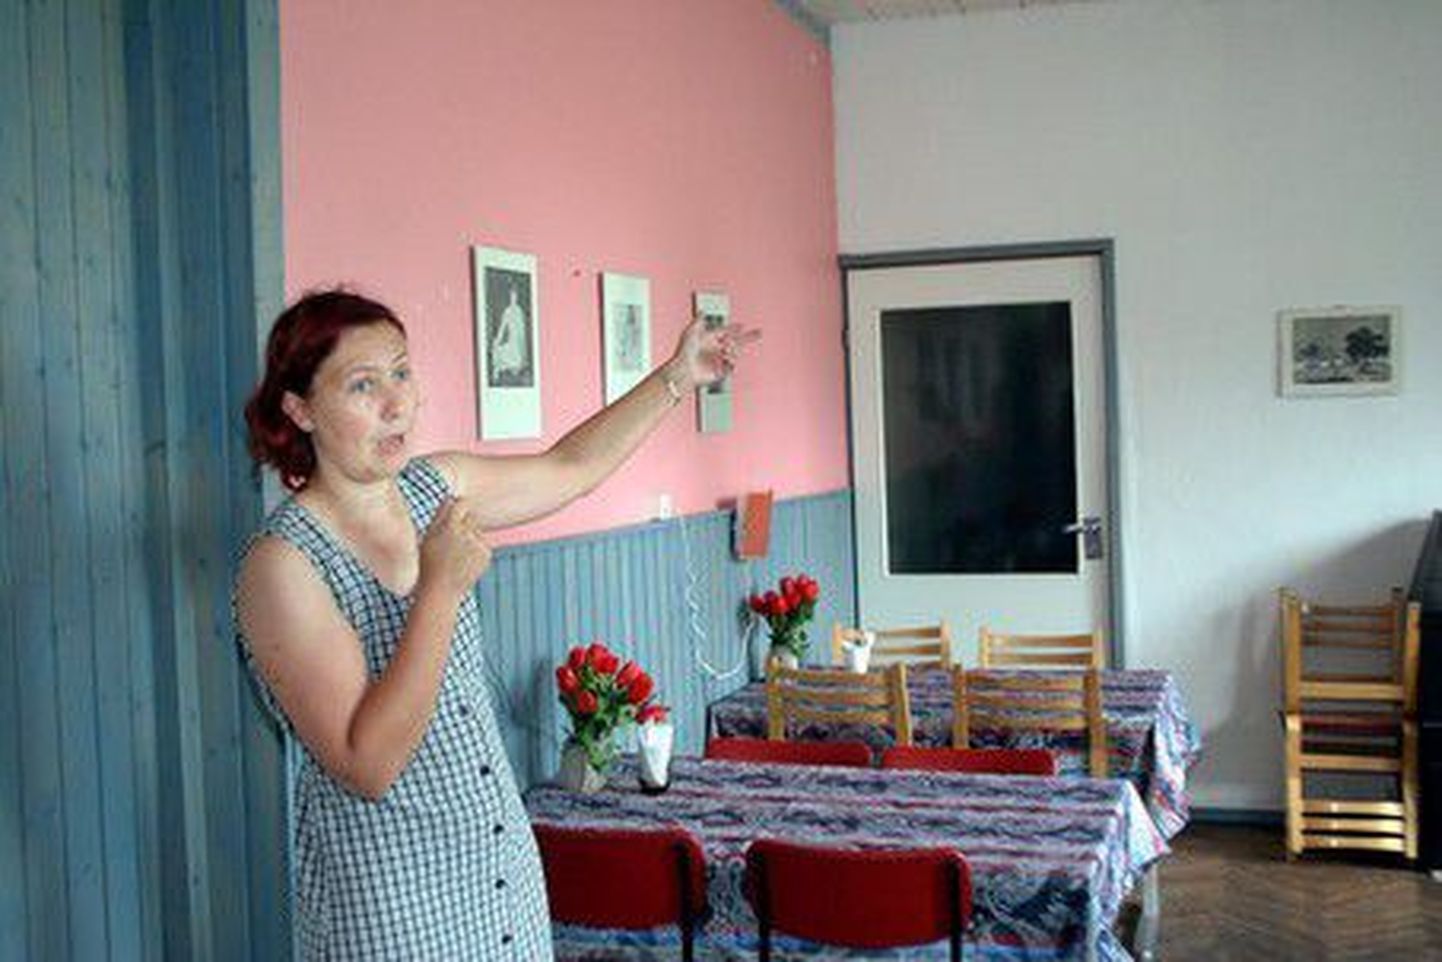 Murru küla seltsi liige Signe Rõngas näitab remondiootel kohvikut.